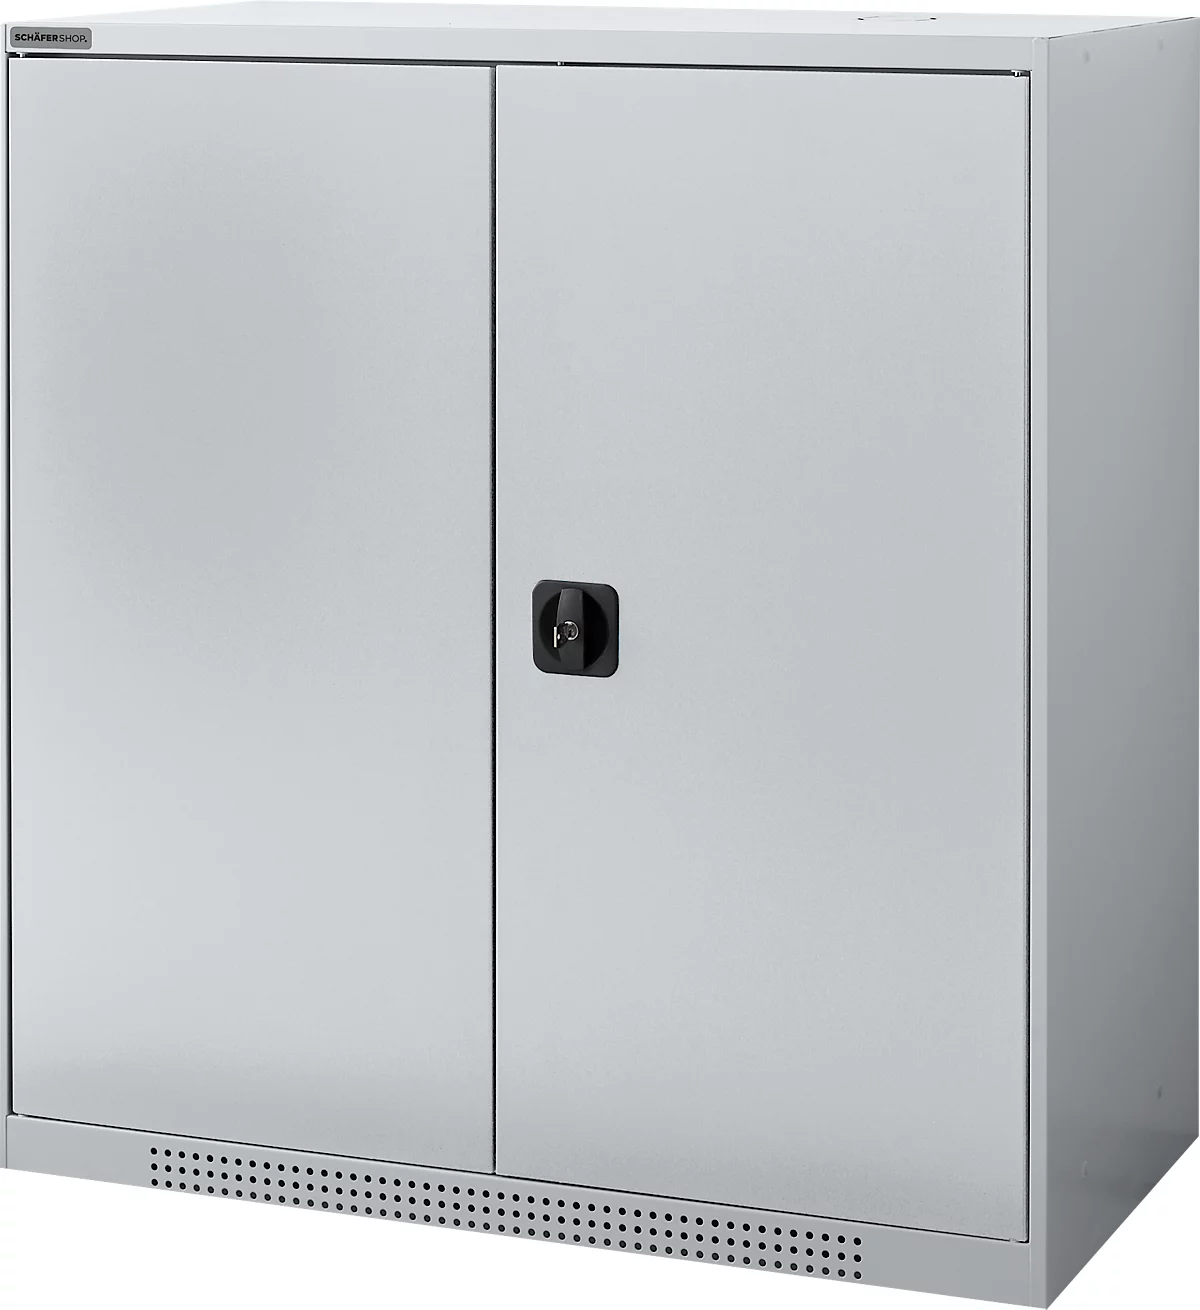 Schäfer Shop Genius armario de doble puerta FS, acero, con agujeros de ventilación, A 1055 x P 520 x A 1105 mm, 3 OH, aluminio blanco/aluminio blanco, hasta 300 kg